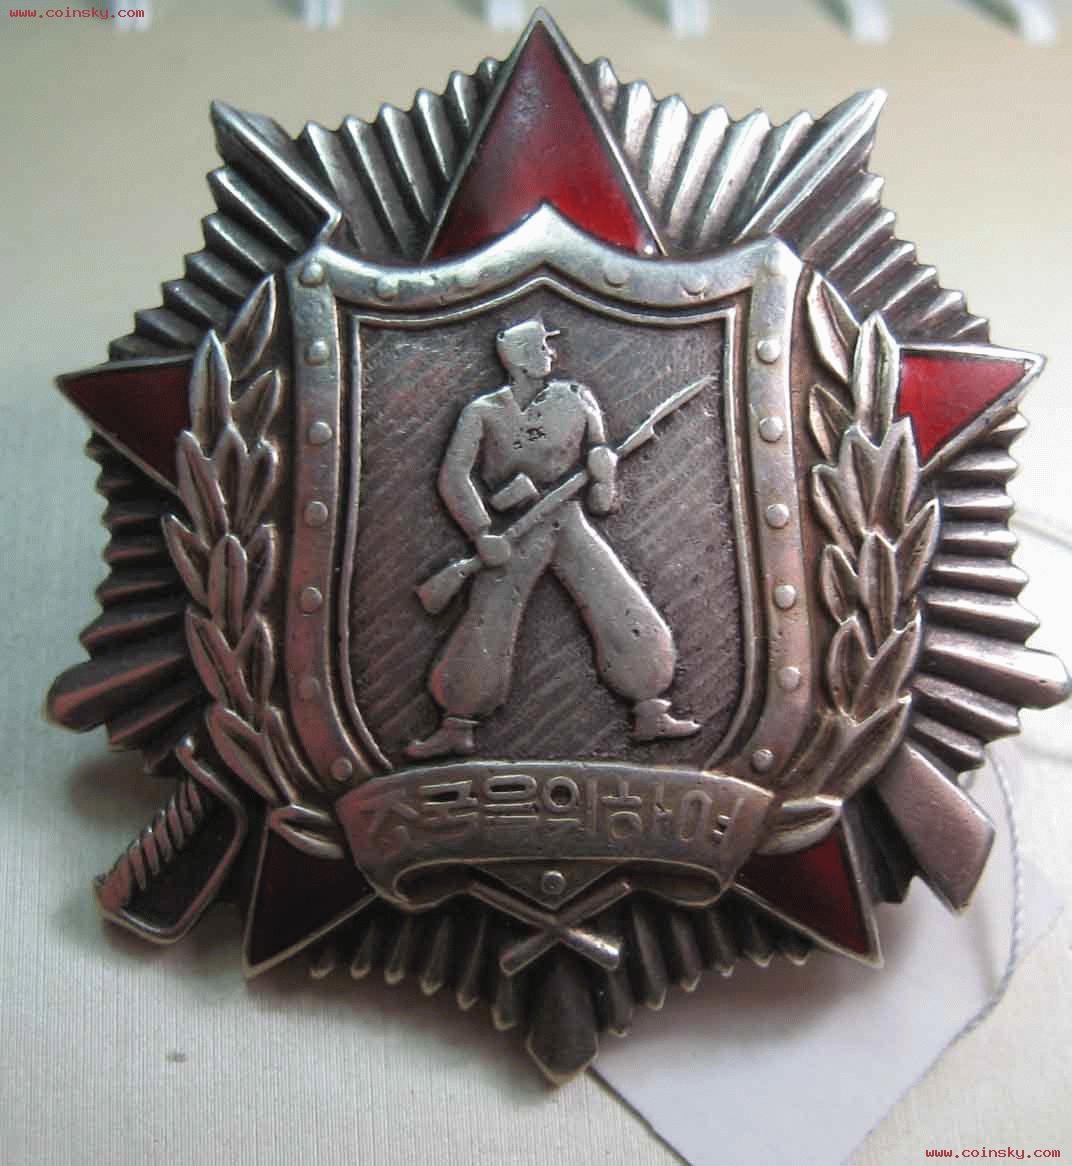 朝鲜二级战士勋章银制